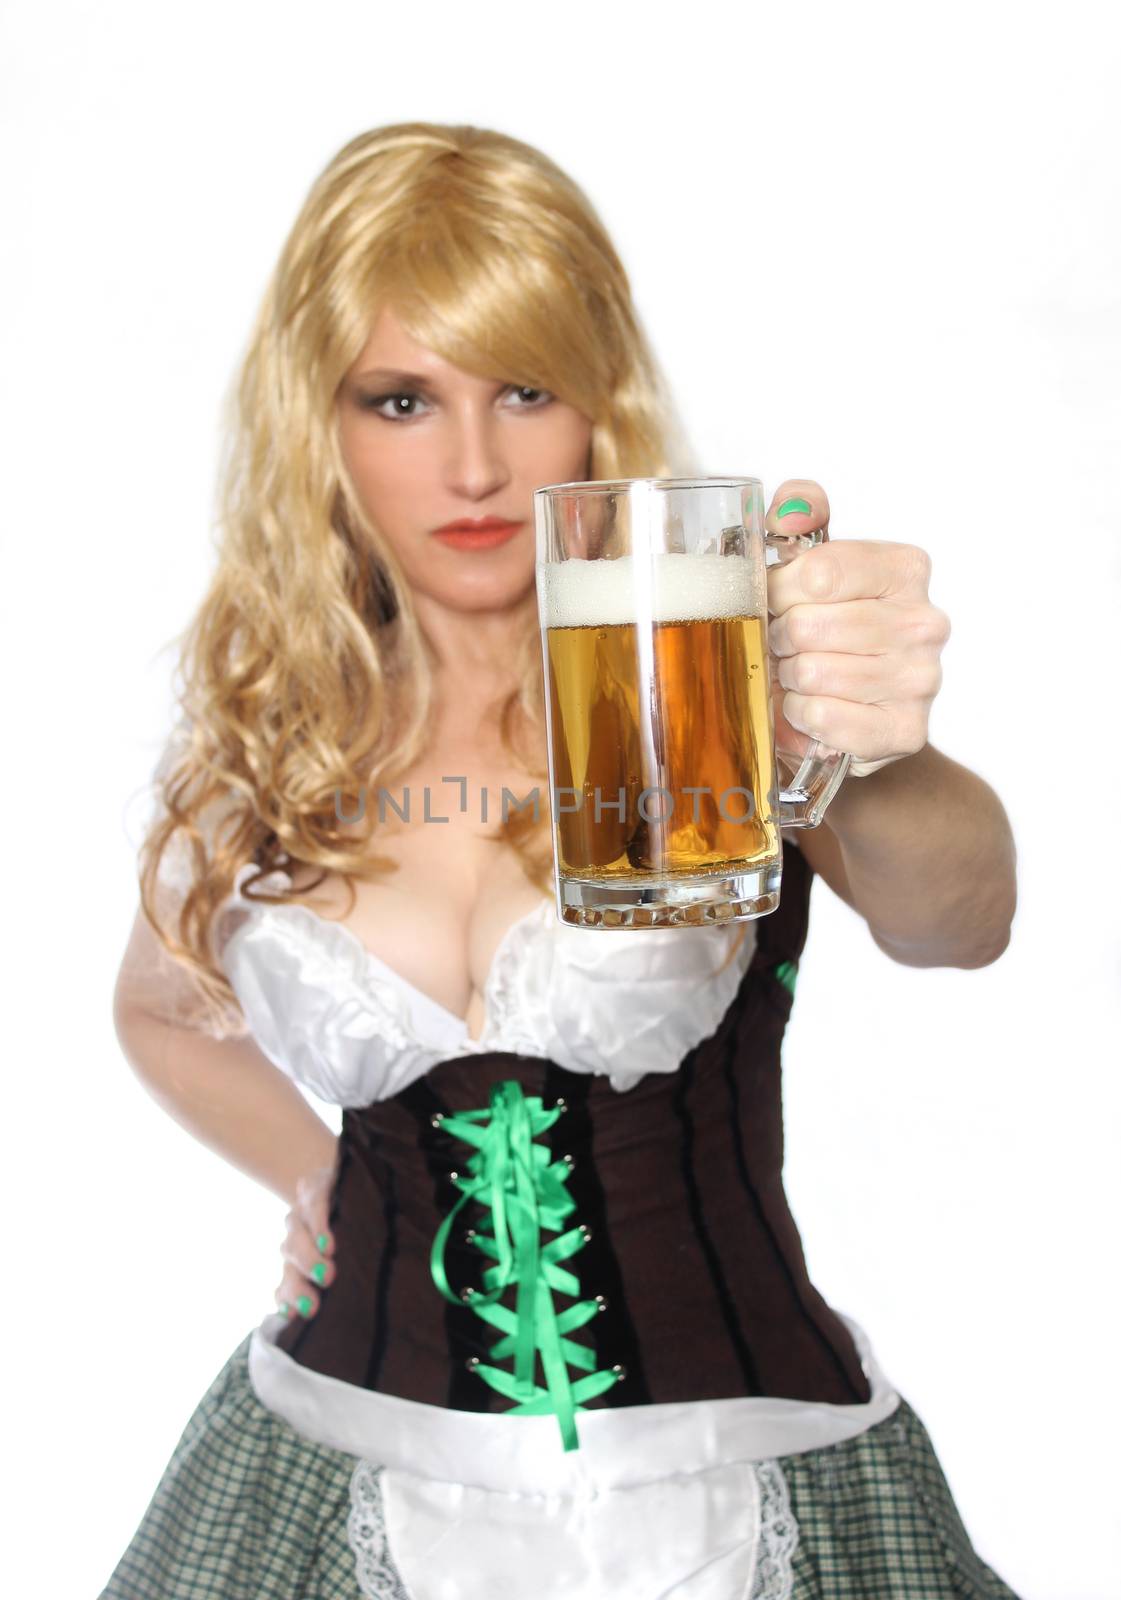 Tavern Waitress With Beer Mug by Marti157900